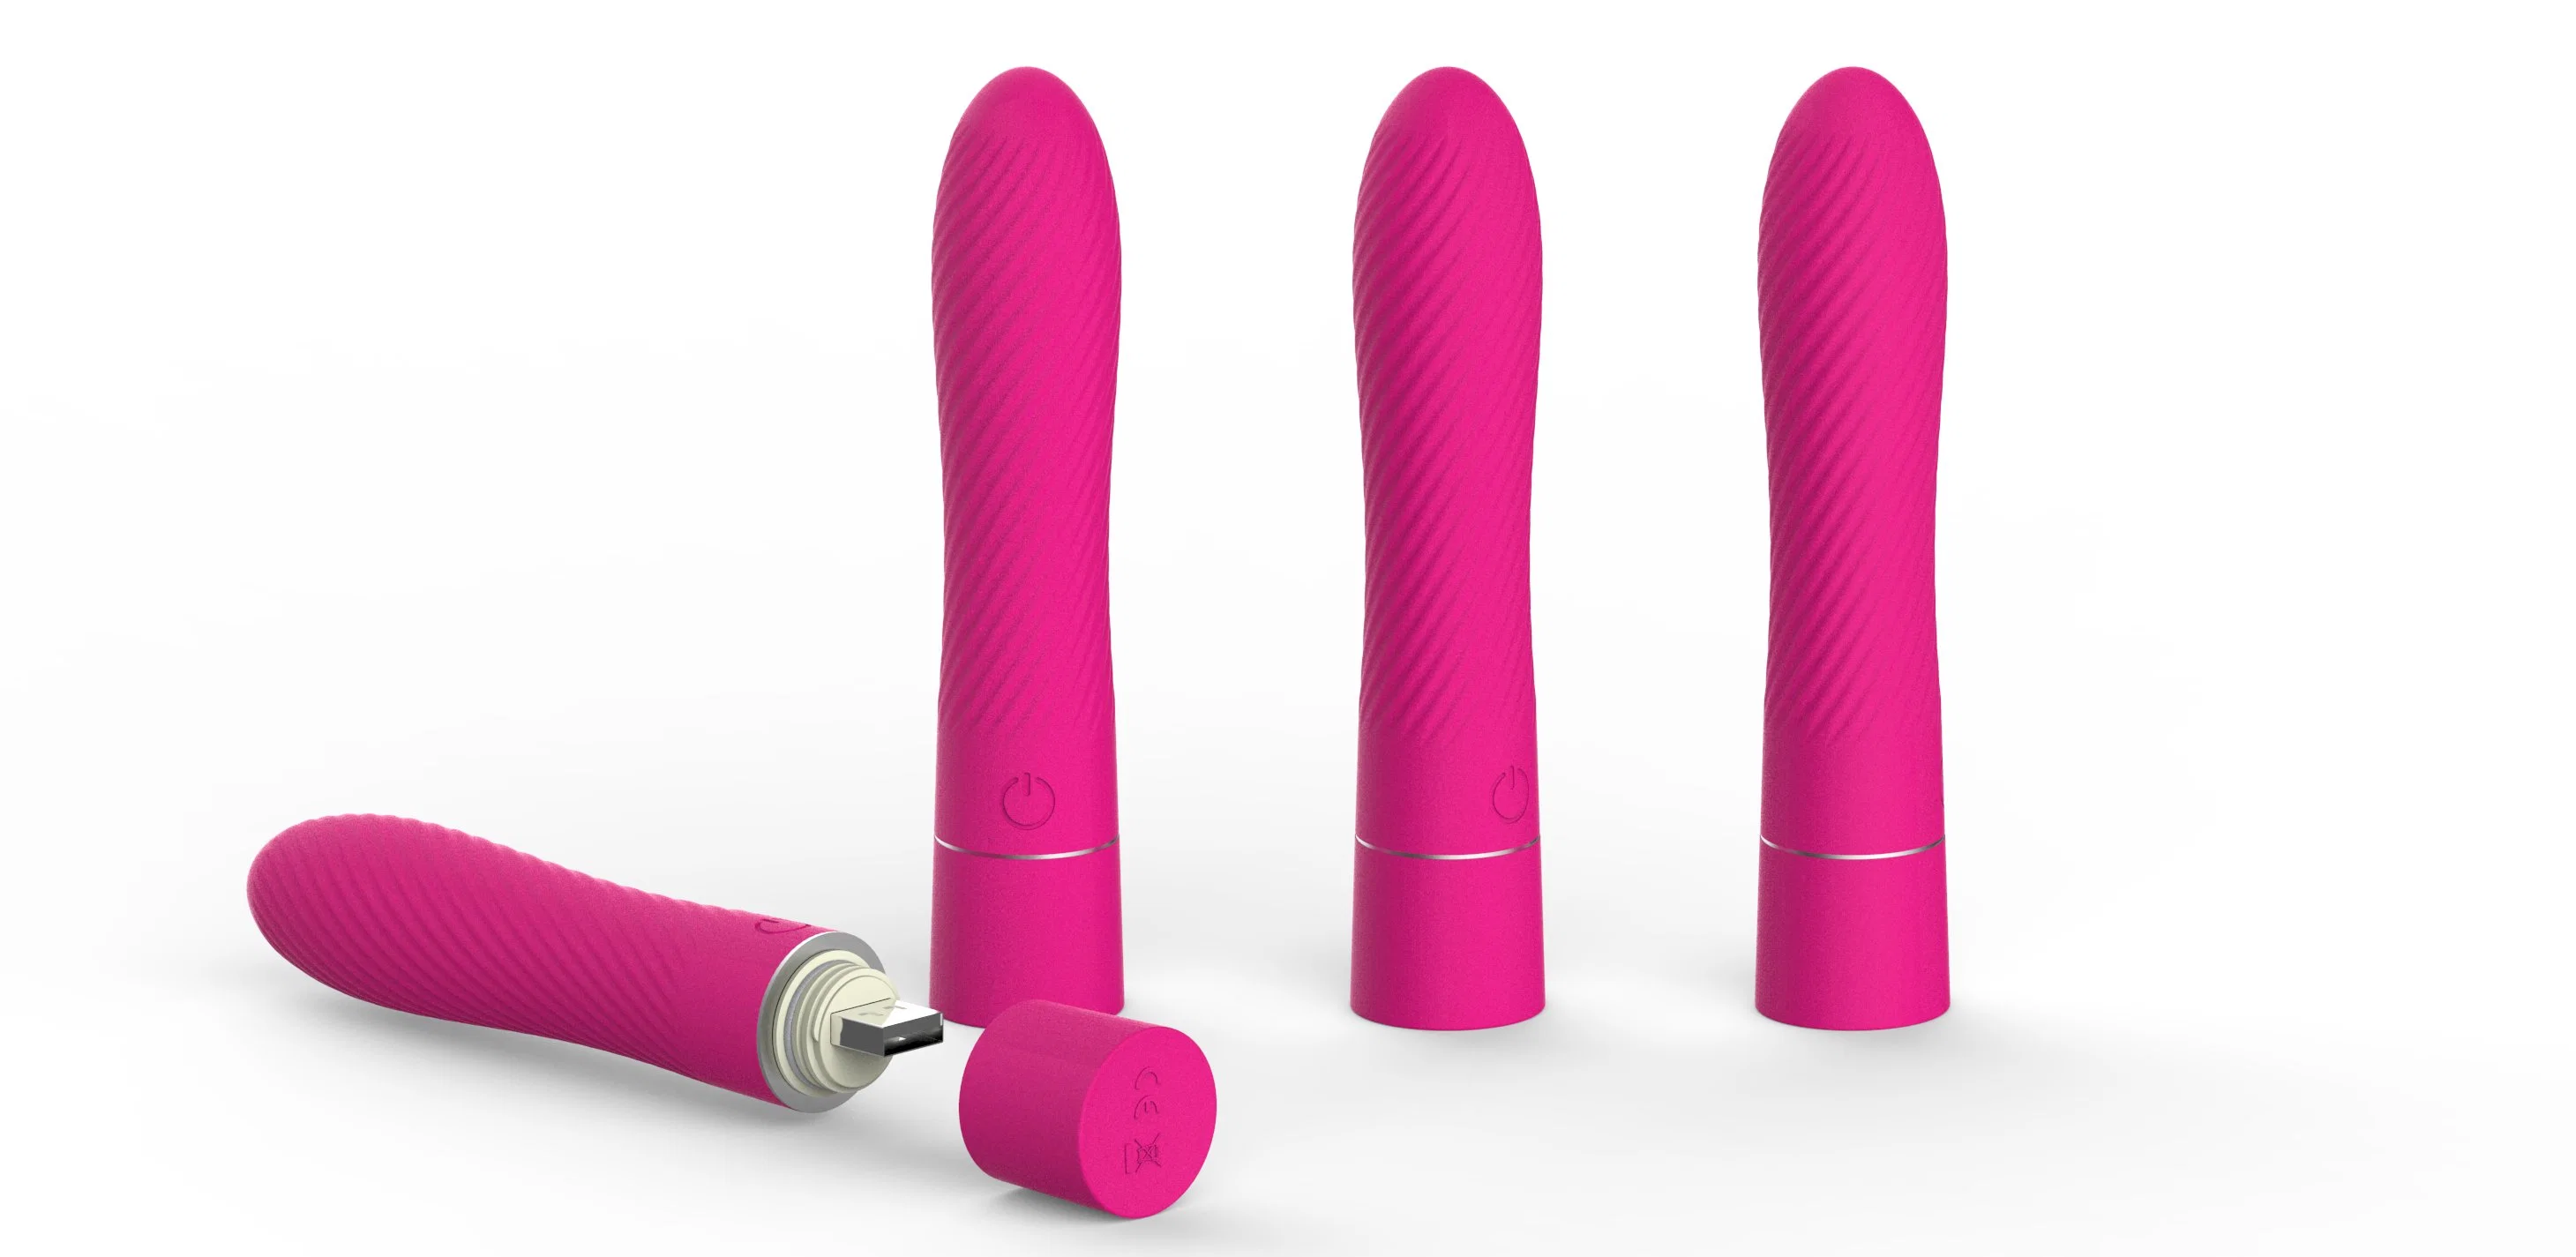 Frauen Sex Vibrator Soft Body G Spot Adult Products Klitoris Vibrator Frauen Sex Spielzeug wiederaufladbare Vibrator USB-Anschluss Keine Notwendigkeit Kabel